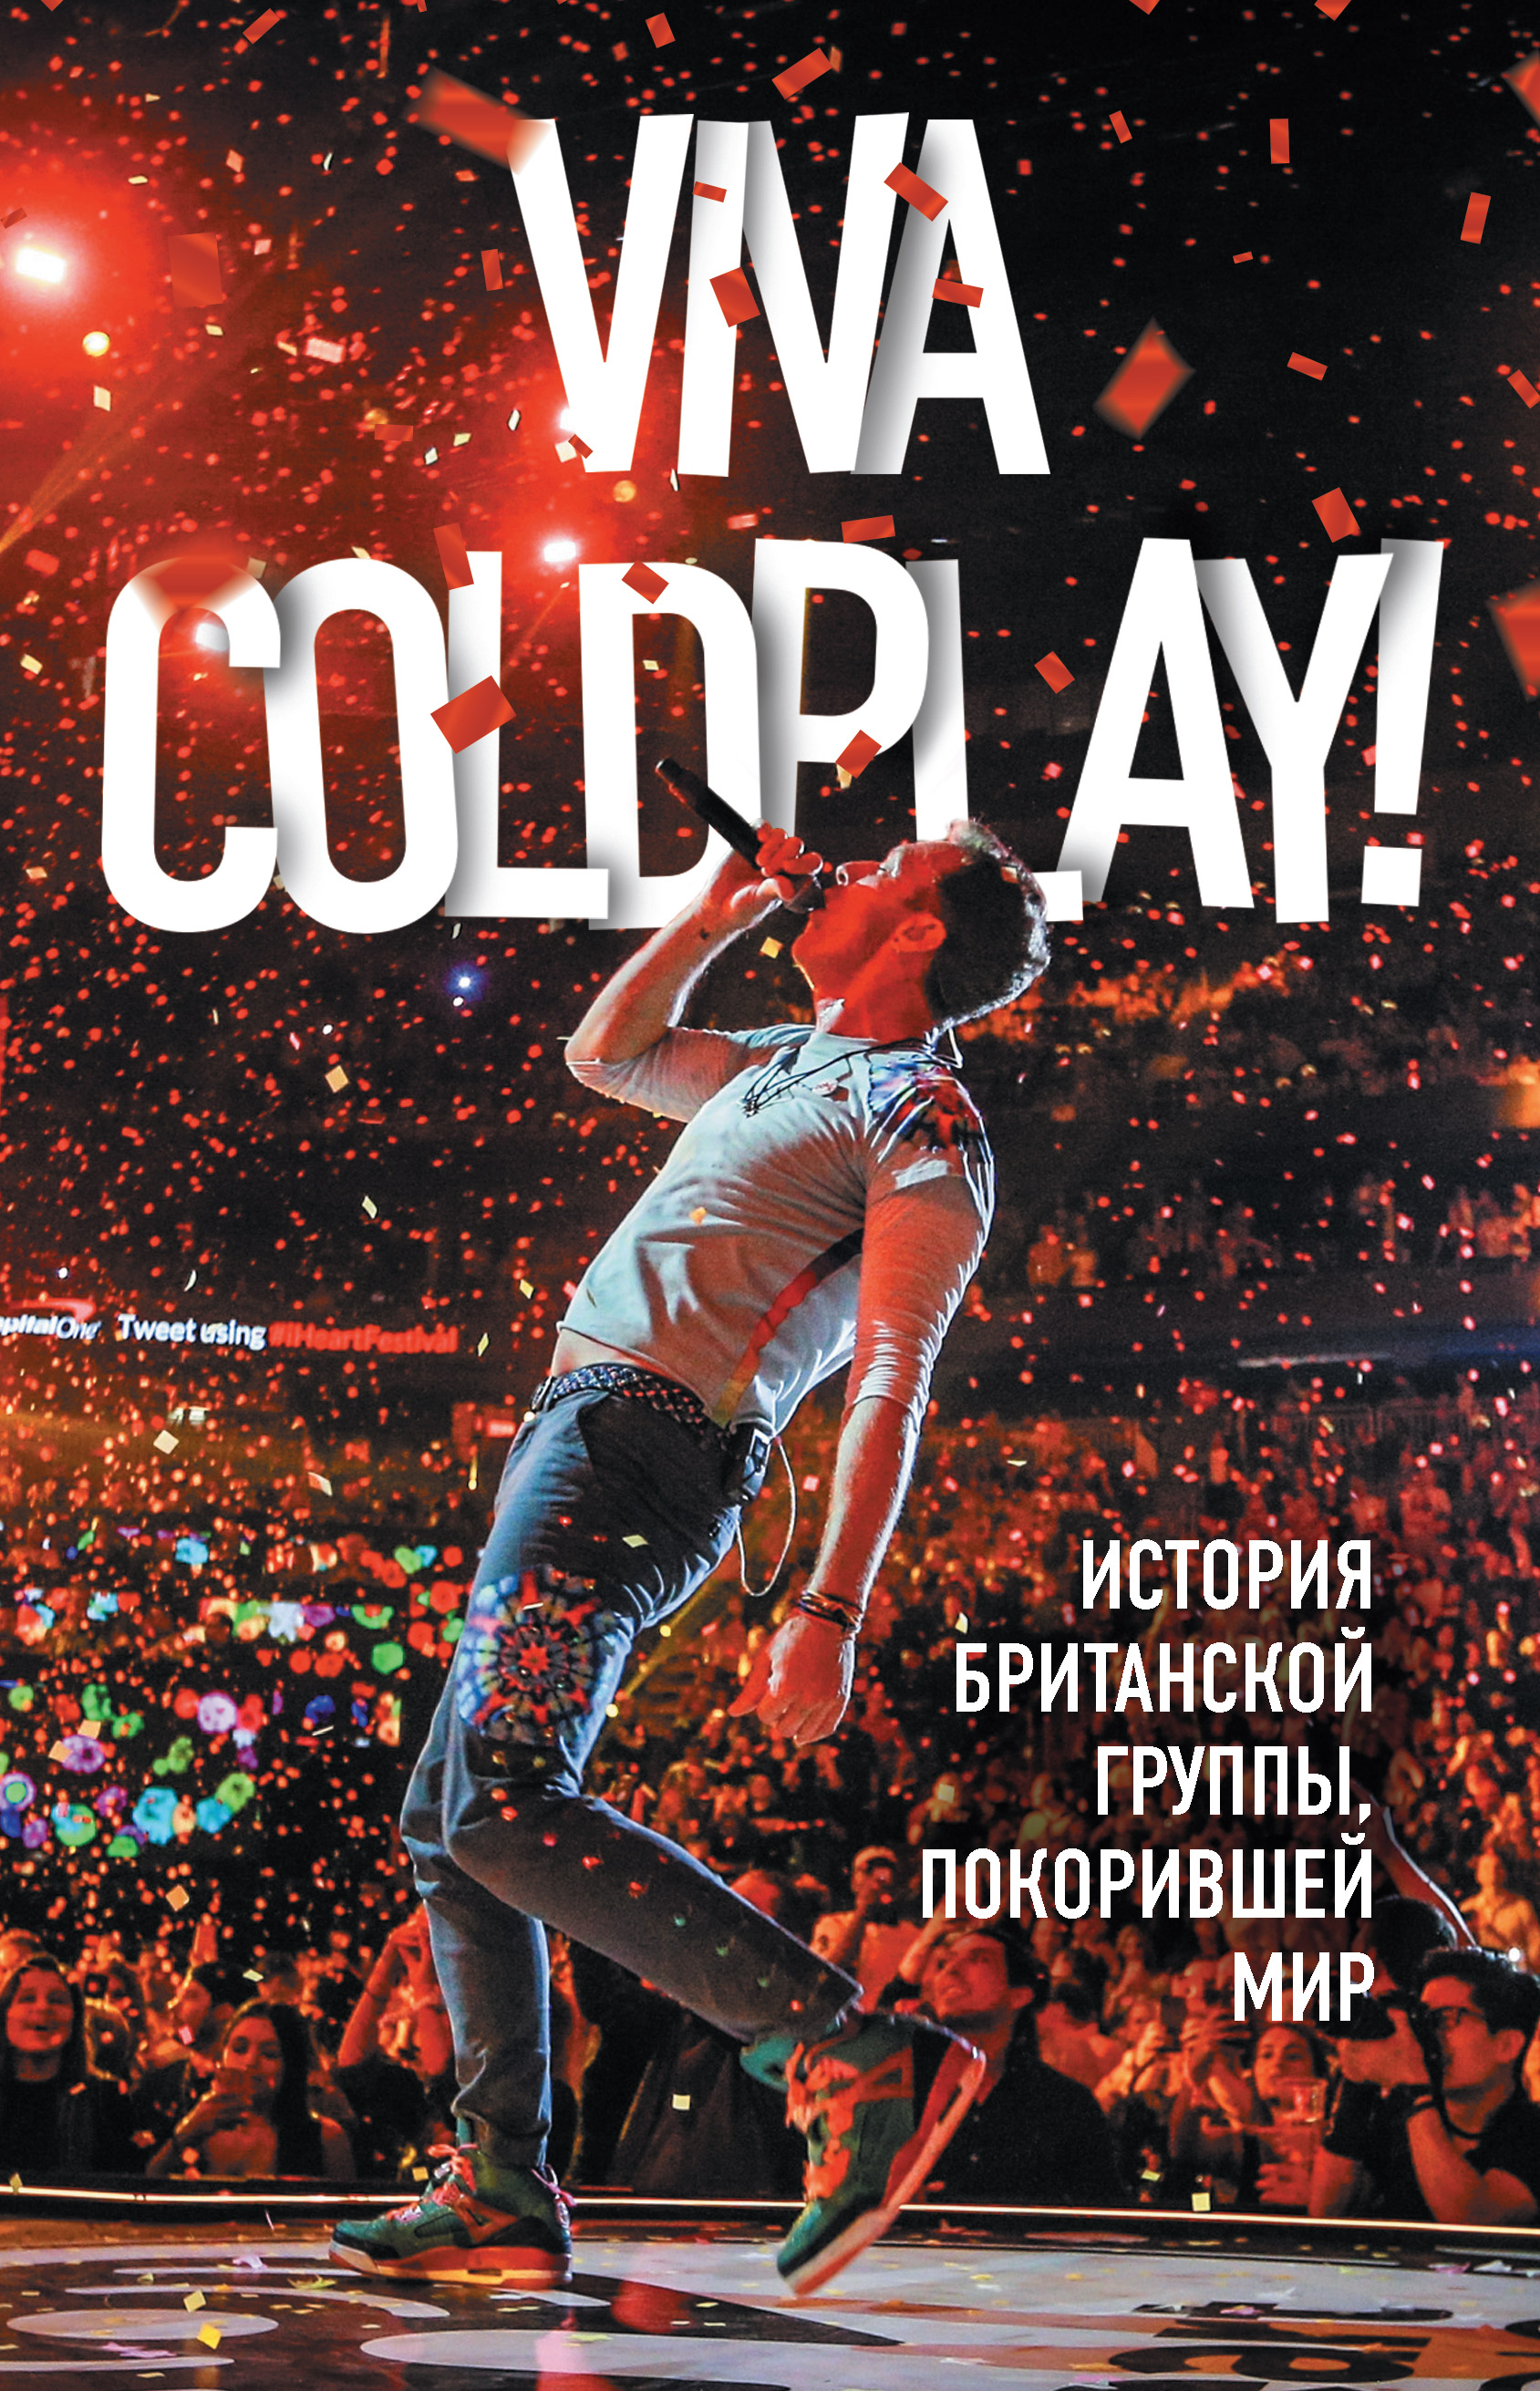 Книга Viva Coldplay! История британской группы, покорившей мир из серии , созданная Мартин Рауч, может относится к жанру Музыка, балет, О бизнесе популярно, Биографии и Мемуары. Стоимость электронной книги Viva Coldplay! История британской группы, покорившей мир с идентификатором 33387239 составляет 399.00 руб.